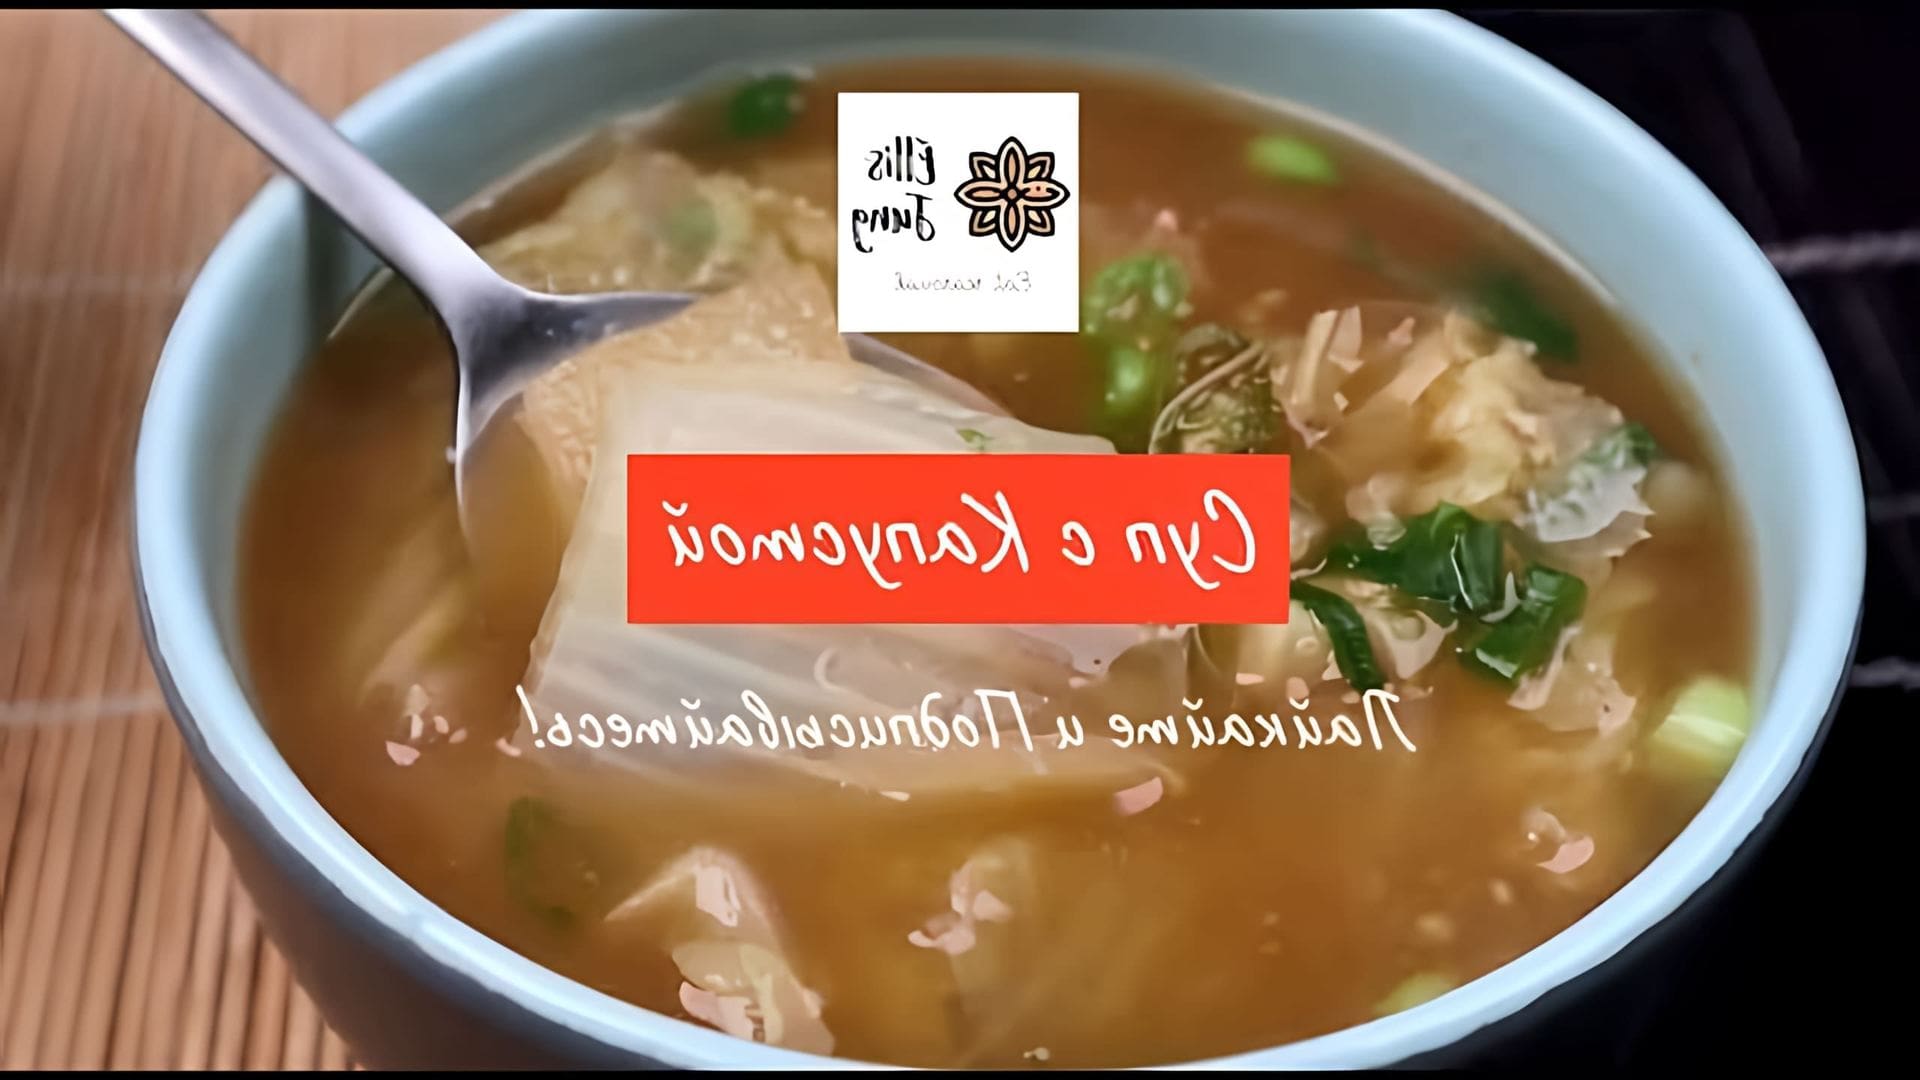 В этом видео демонстрируется рецепт корейского супа с пекинской капустой на соевой пасте